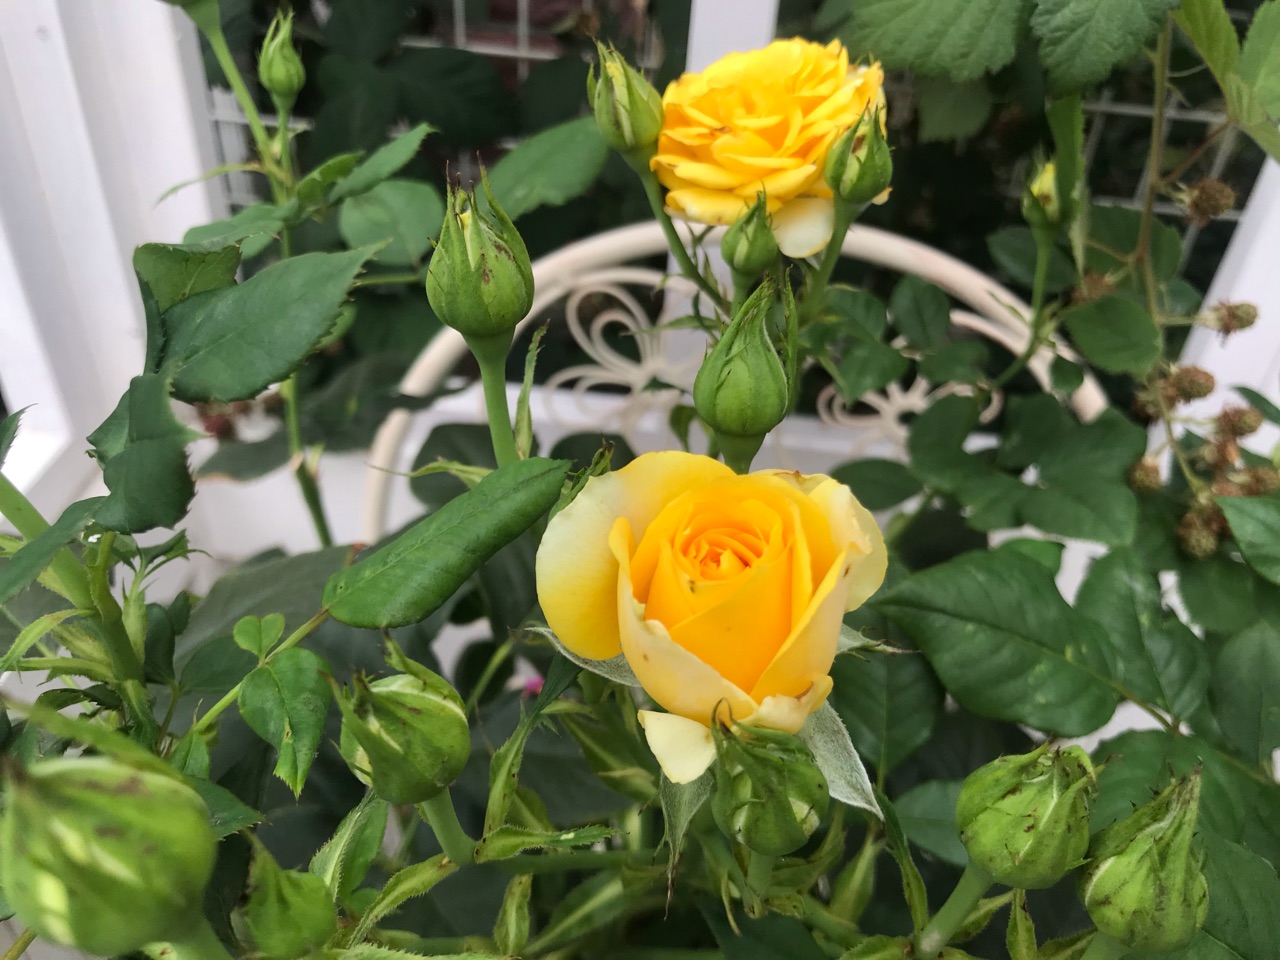 バラゾウムシ出現 ローズフォーエバーは綺麗に咲き始めたけど のばらのガーデニングブログ Hana And Rose Garden Powered By ライブドアブログ